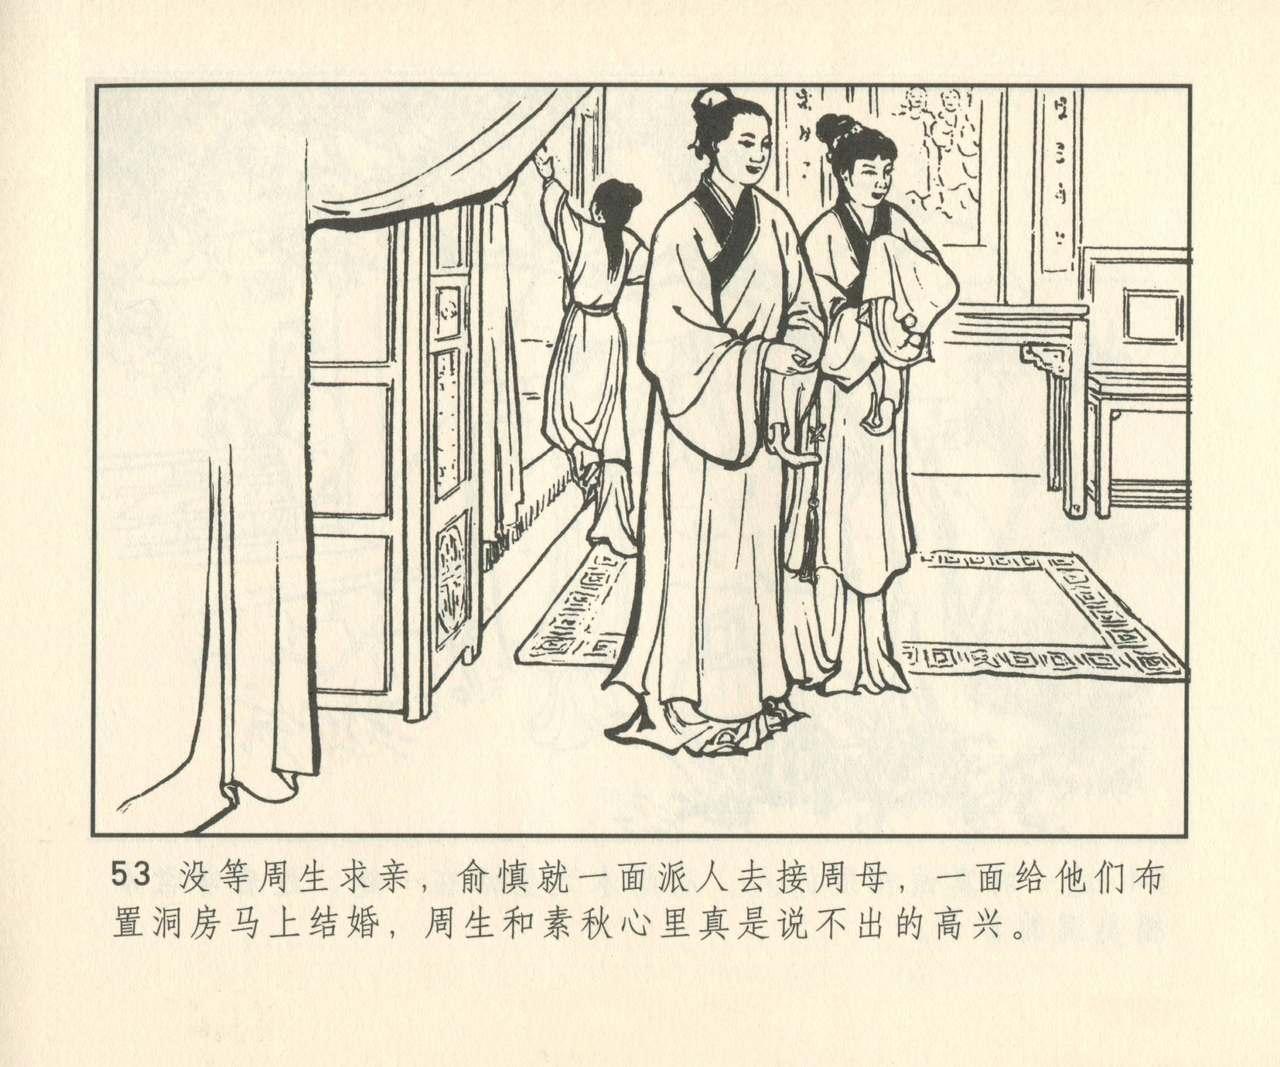 聊斋志异 张玮等绘 天津人民美术出版社 卷二十一 ~ 三十 333